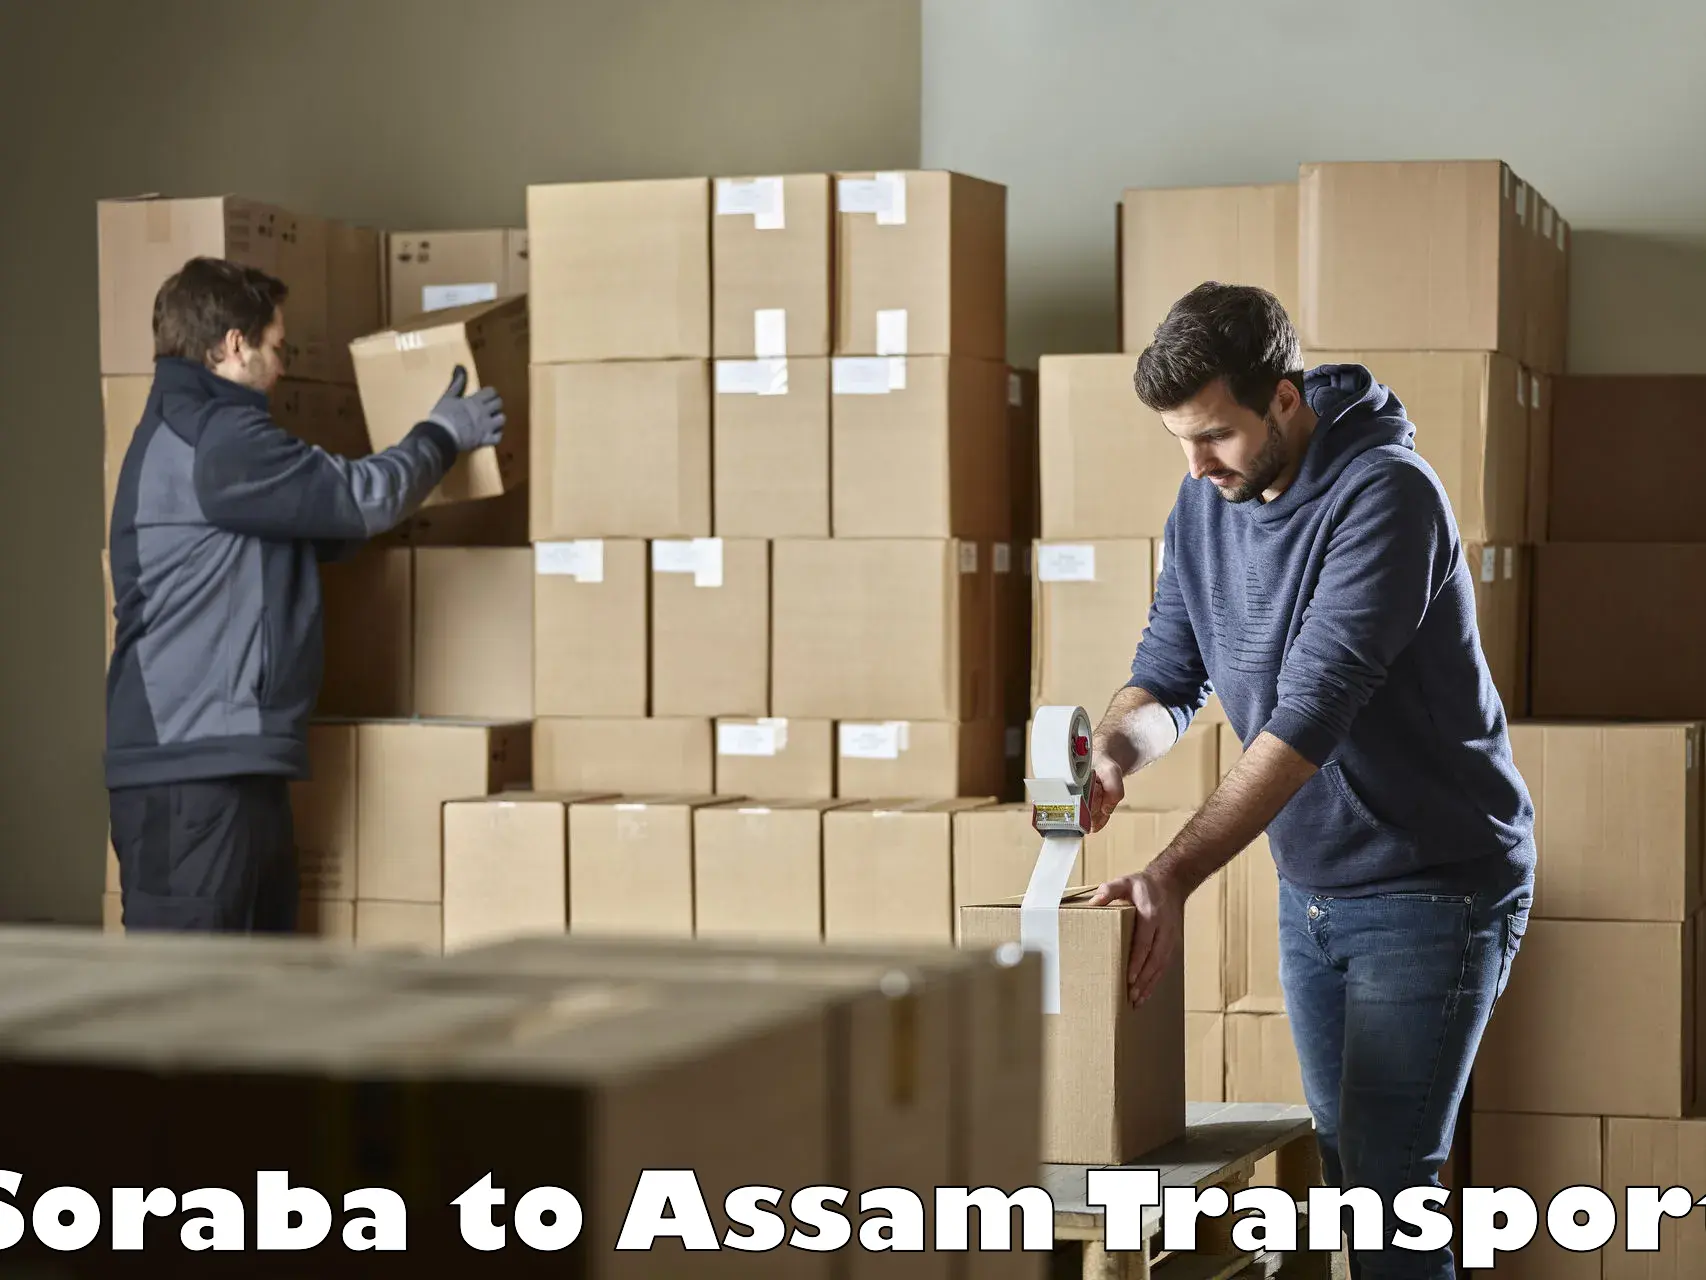 Furniture transport service Soraba to Assam